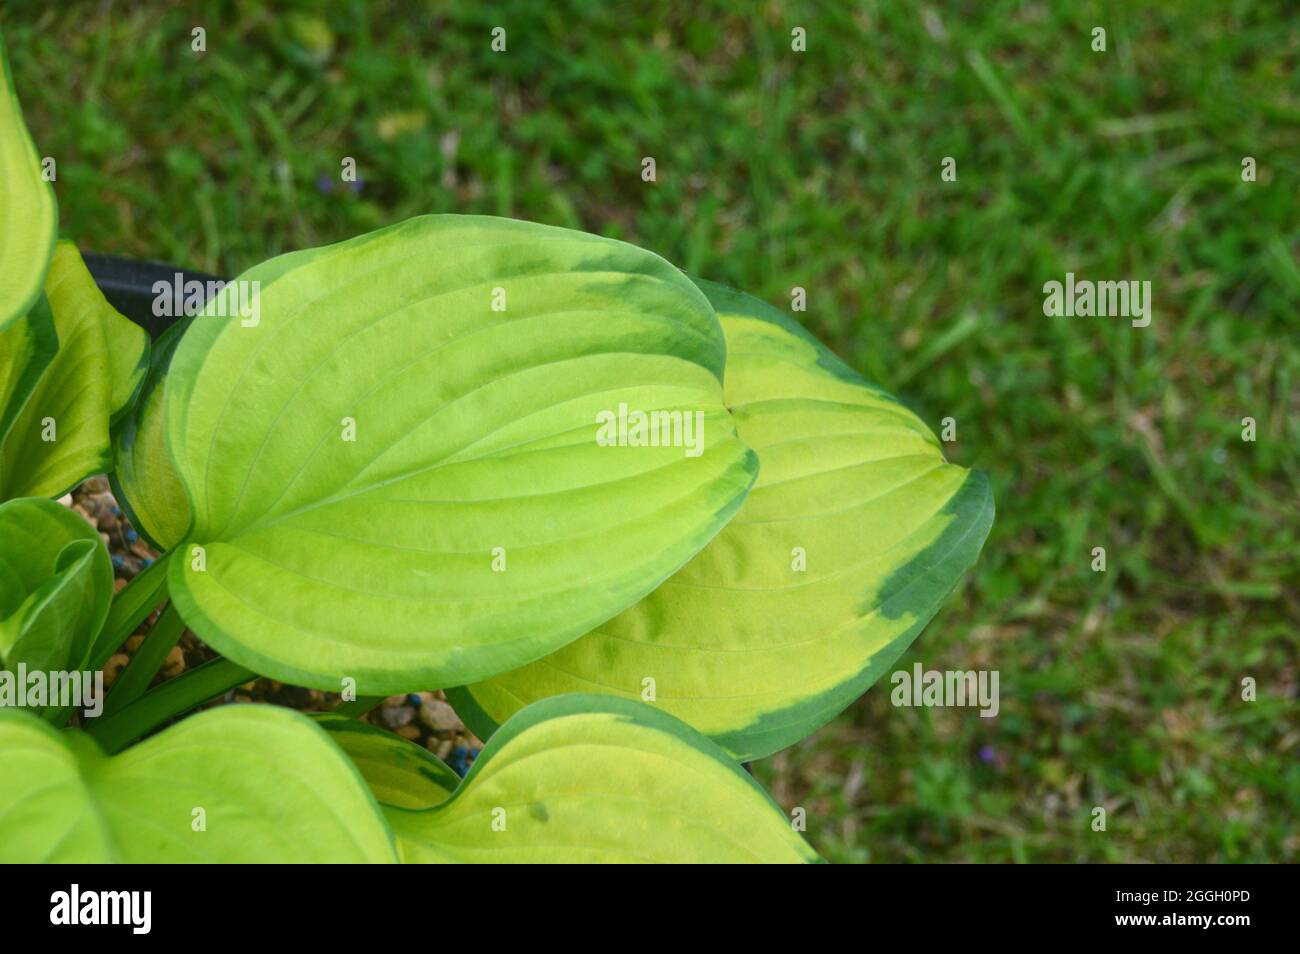 Hojas de color verde claro variadas con márgenes verdes oscuros La planta  Hosta 'Stained Glass' (Lirio de plátano) cultivada en una olla en un jardín  de cabañas inglés, Reino Unido Fotografía de